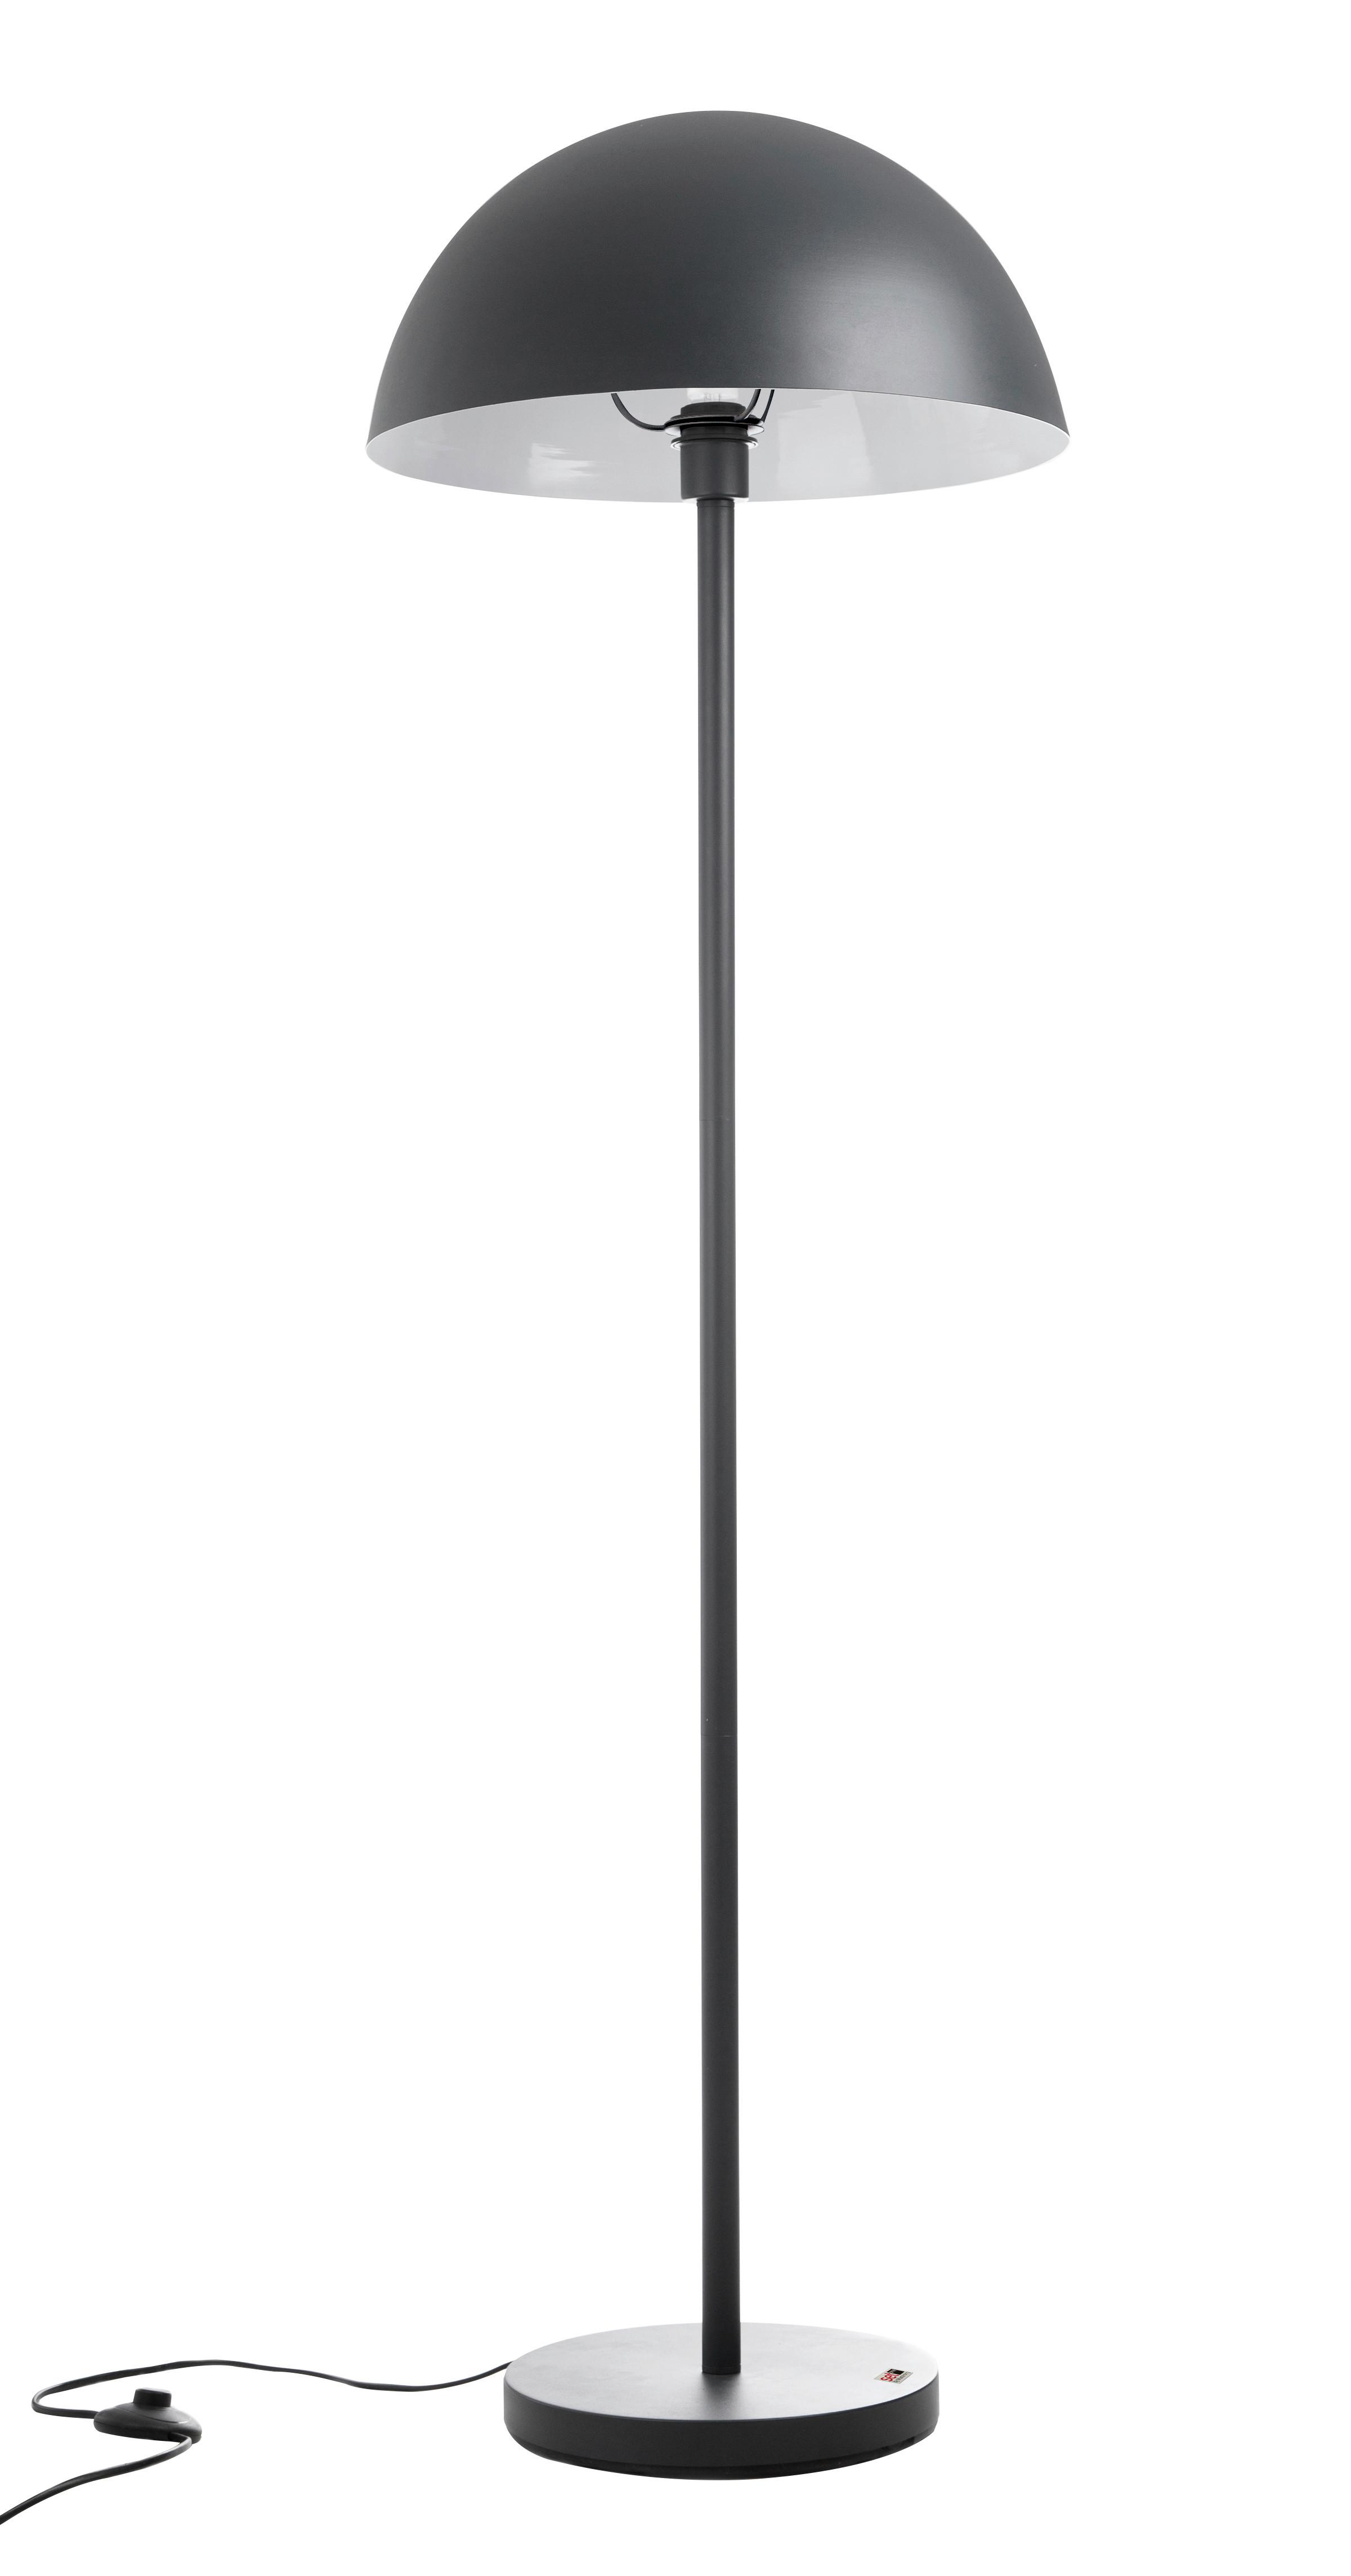 Stehlampe Kalisto Grau mit Fußschalter Rund, Modern - Grau, Design, Metall (45/145cm) - SetOne by Musterring